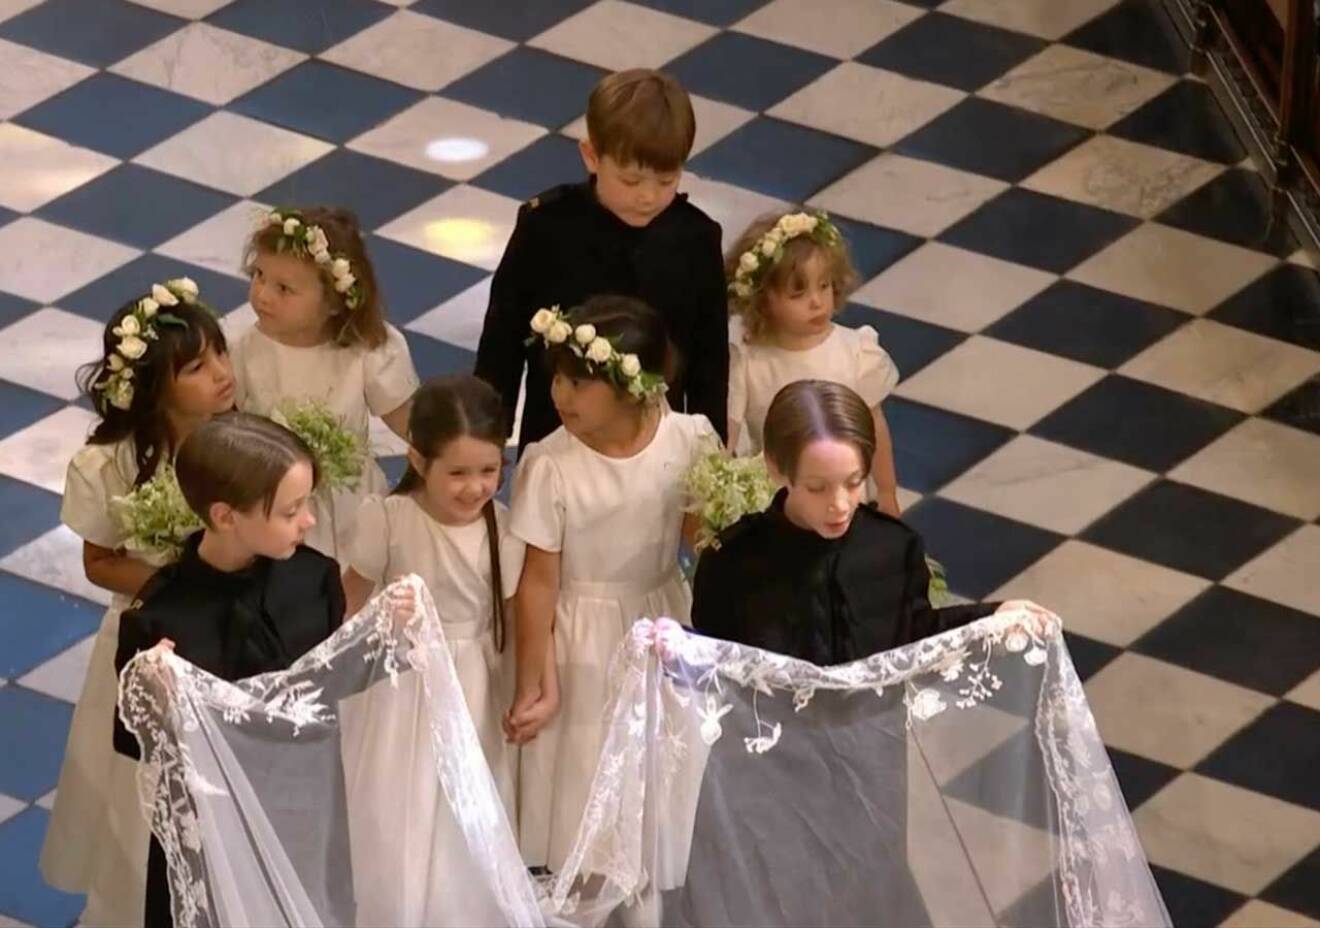 Nästan hela näbbet från prins Harrys bröllop. Prins George och prinsessan Charlotte slussades undan och kom inte med på bilden.